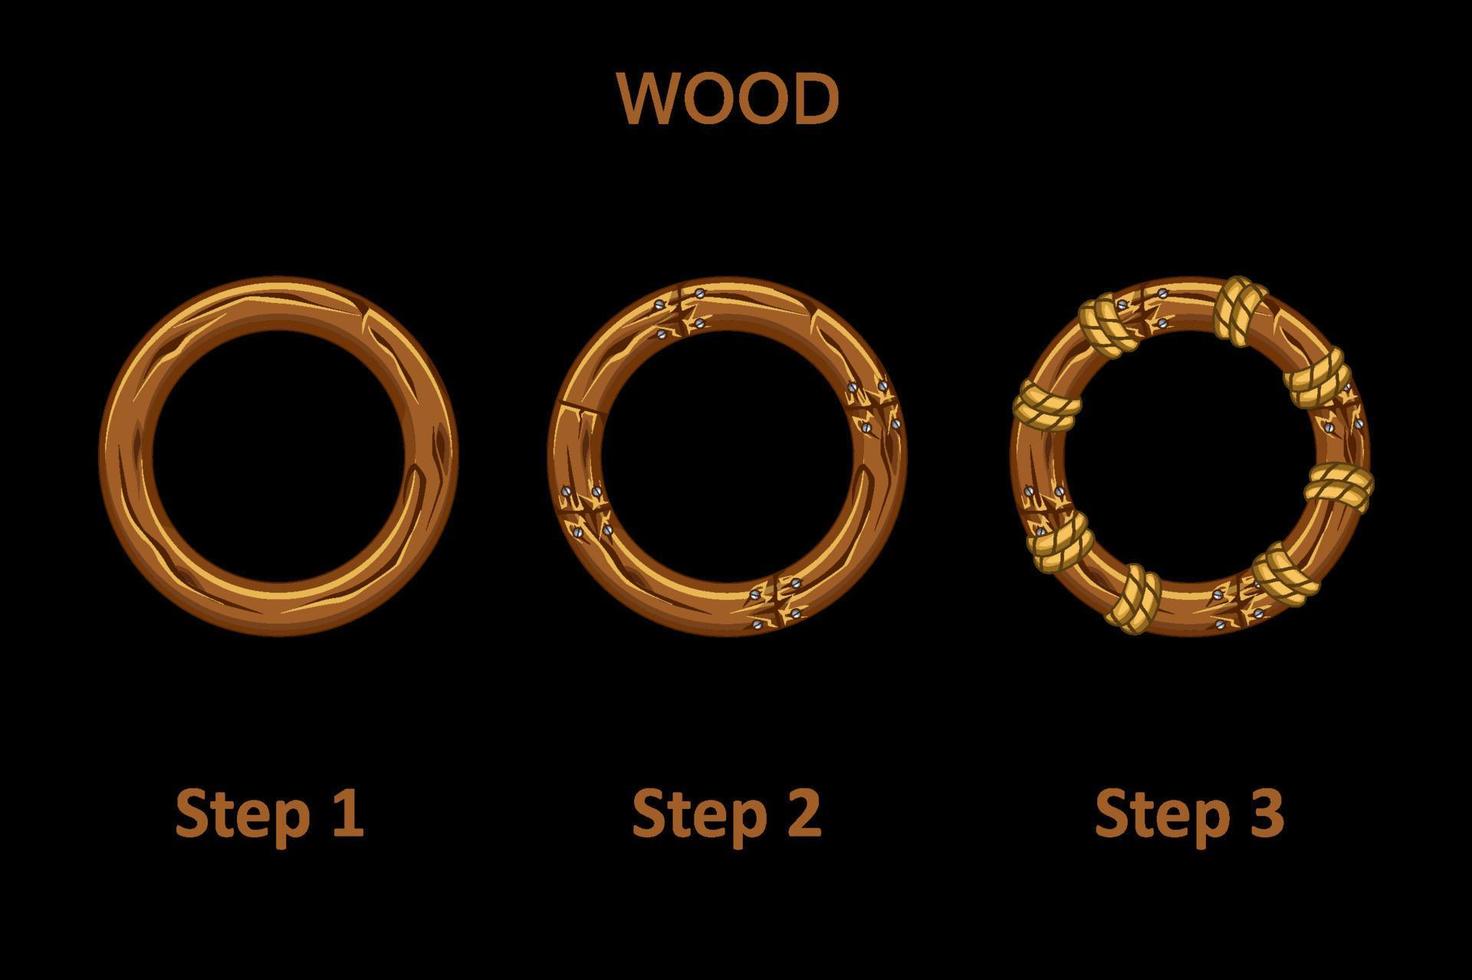 conjunto de aplicativo de moldura redonda de madeira, 3 etapas para progredir. molduras de madeira para desenhar melhorias. vetor